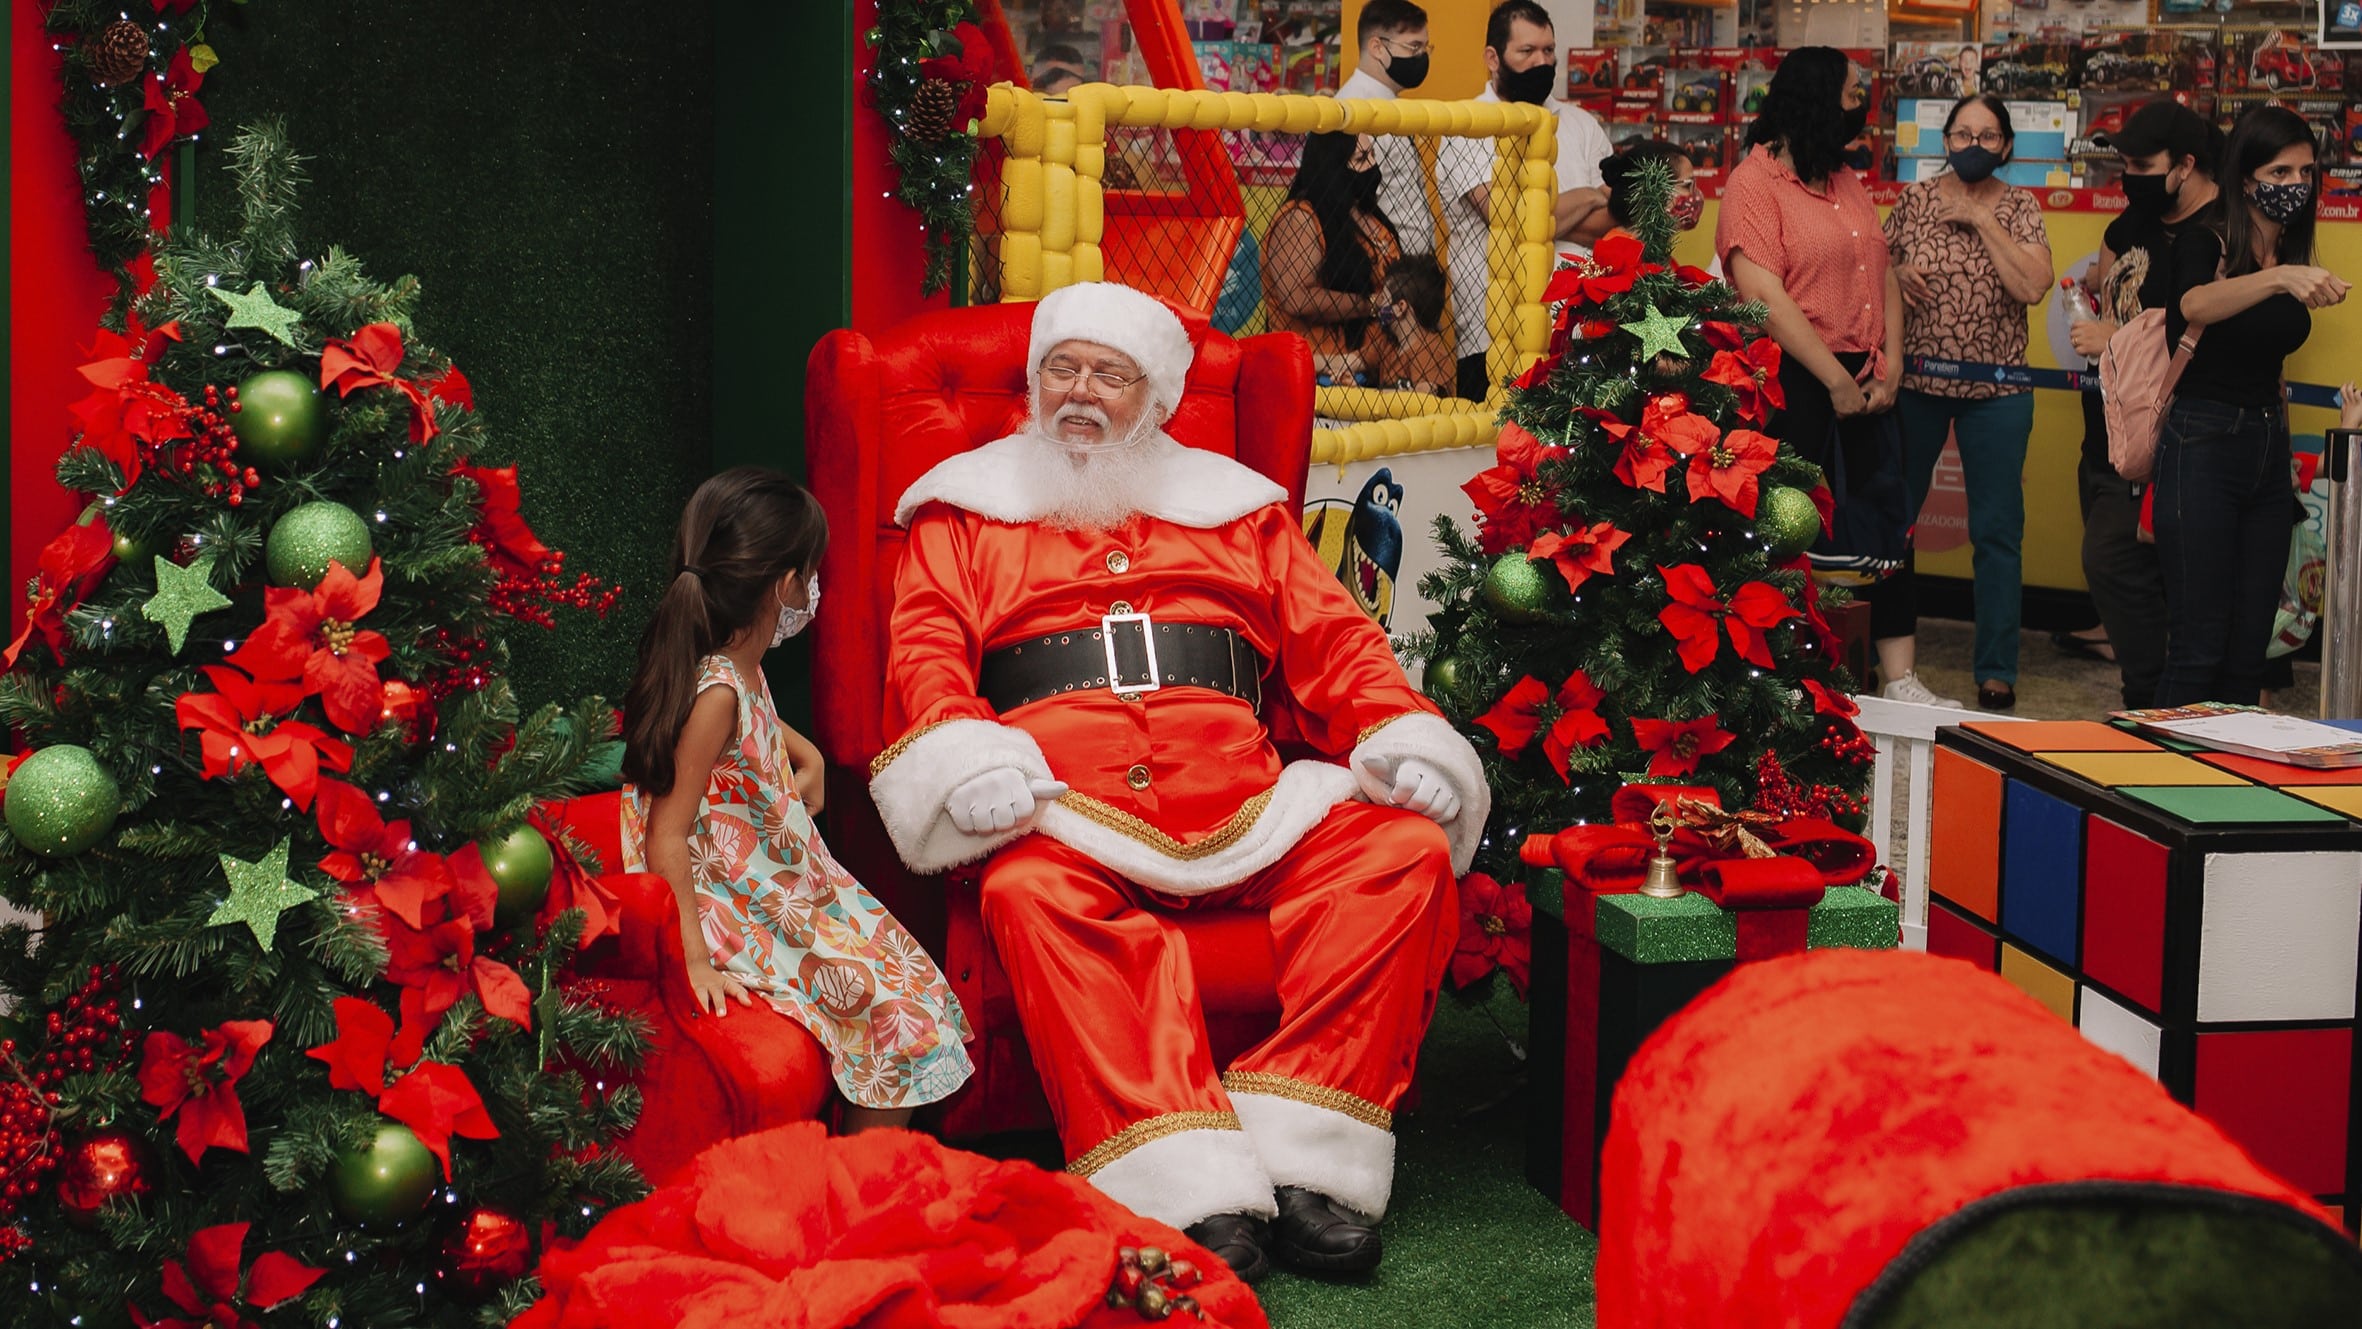 Eventos de Natal 2023 - Encontro com Papai Noel e mais - Pequenos no Rio